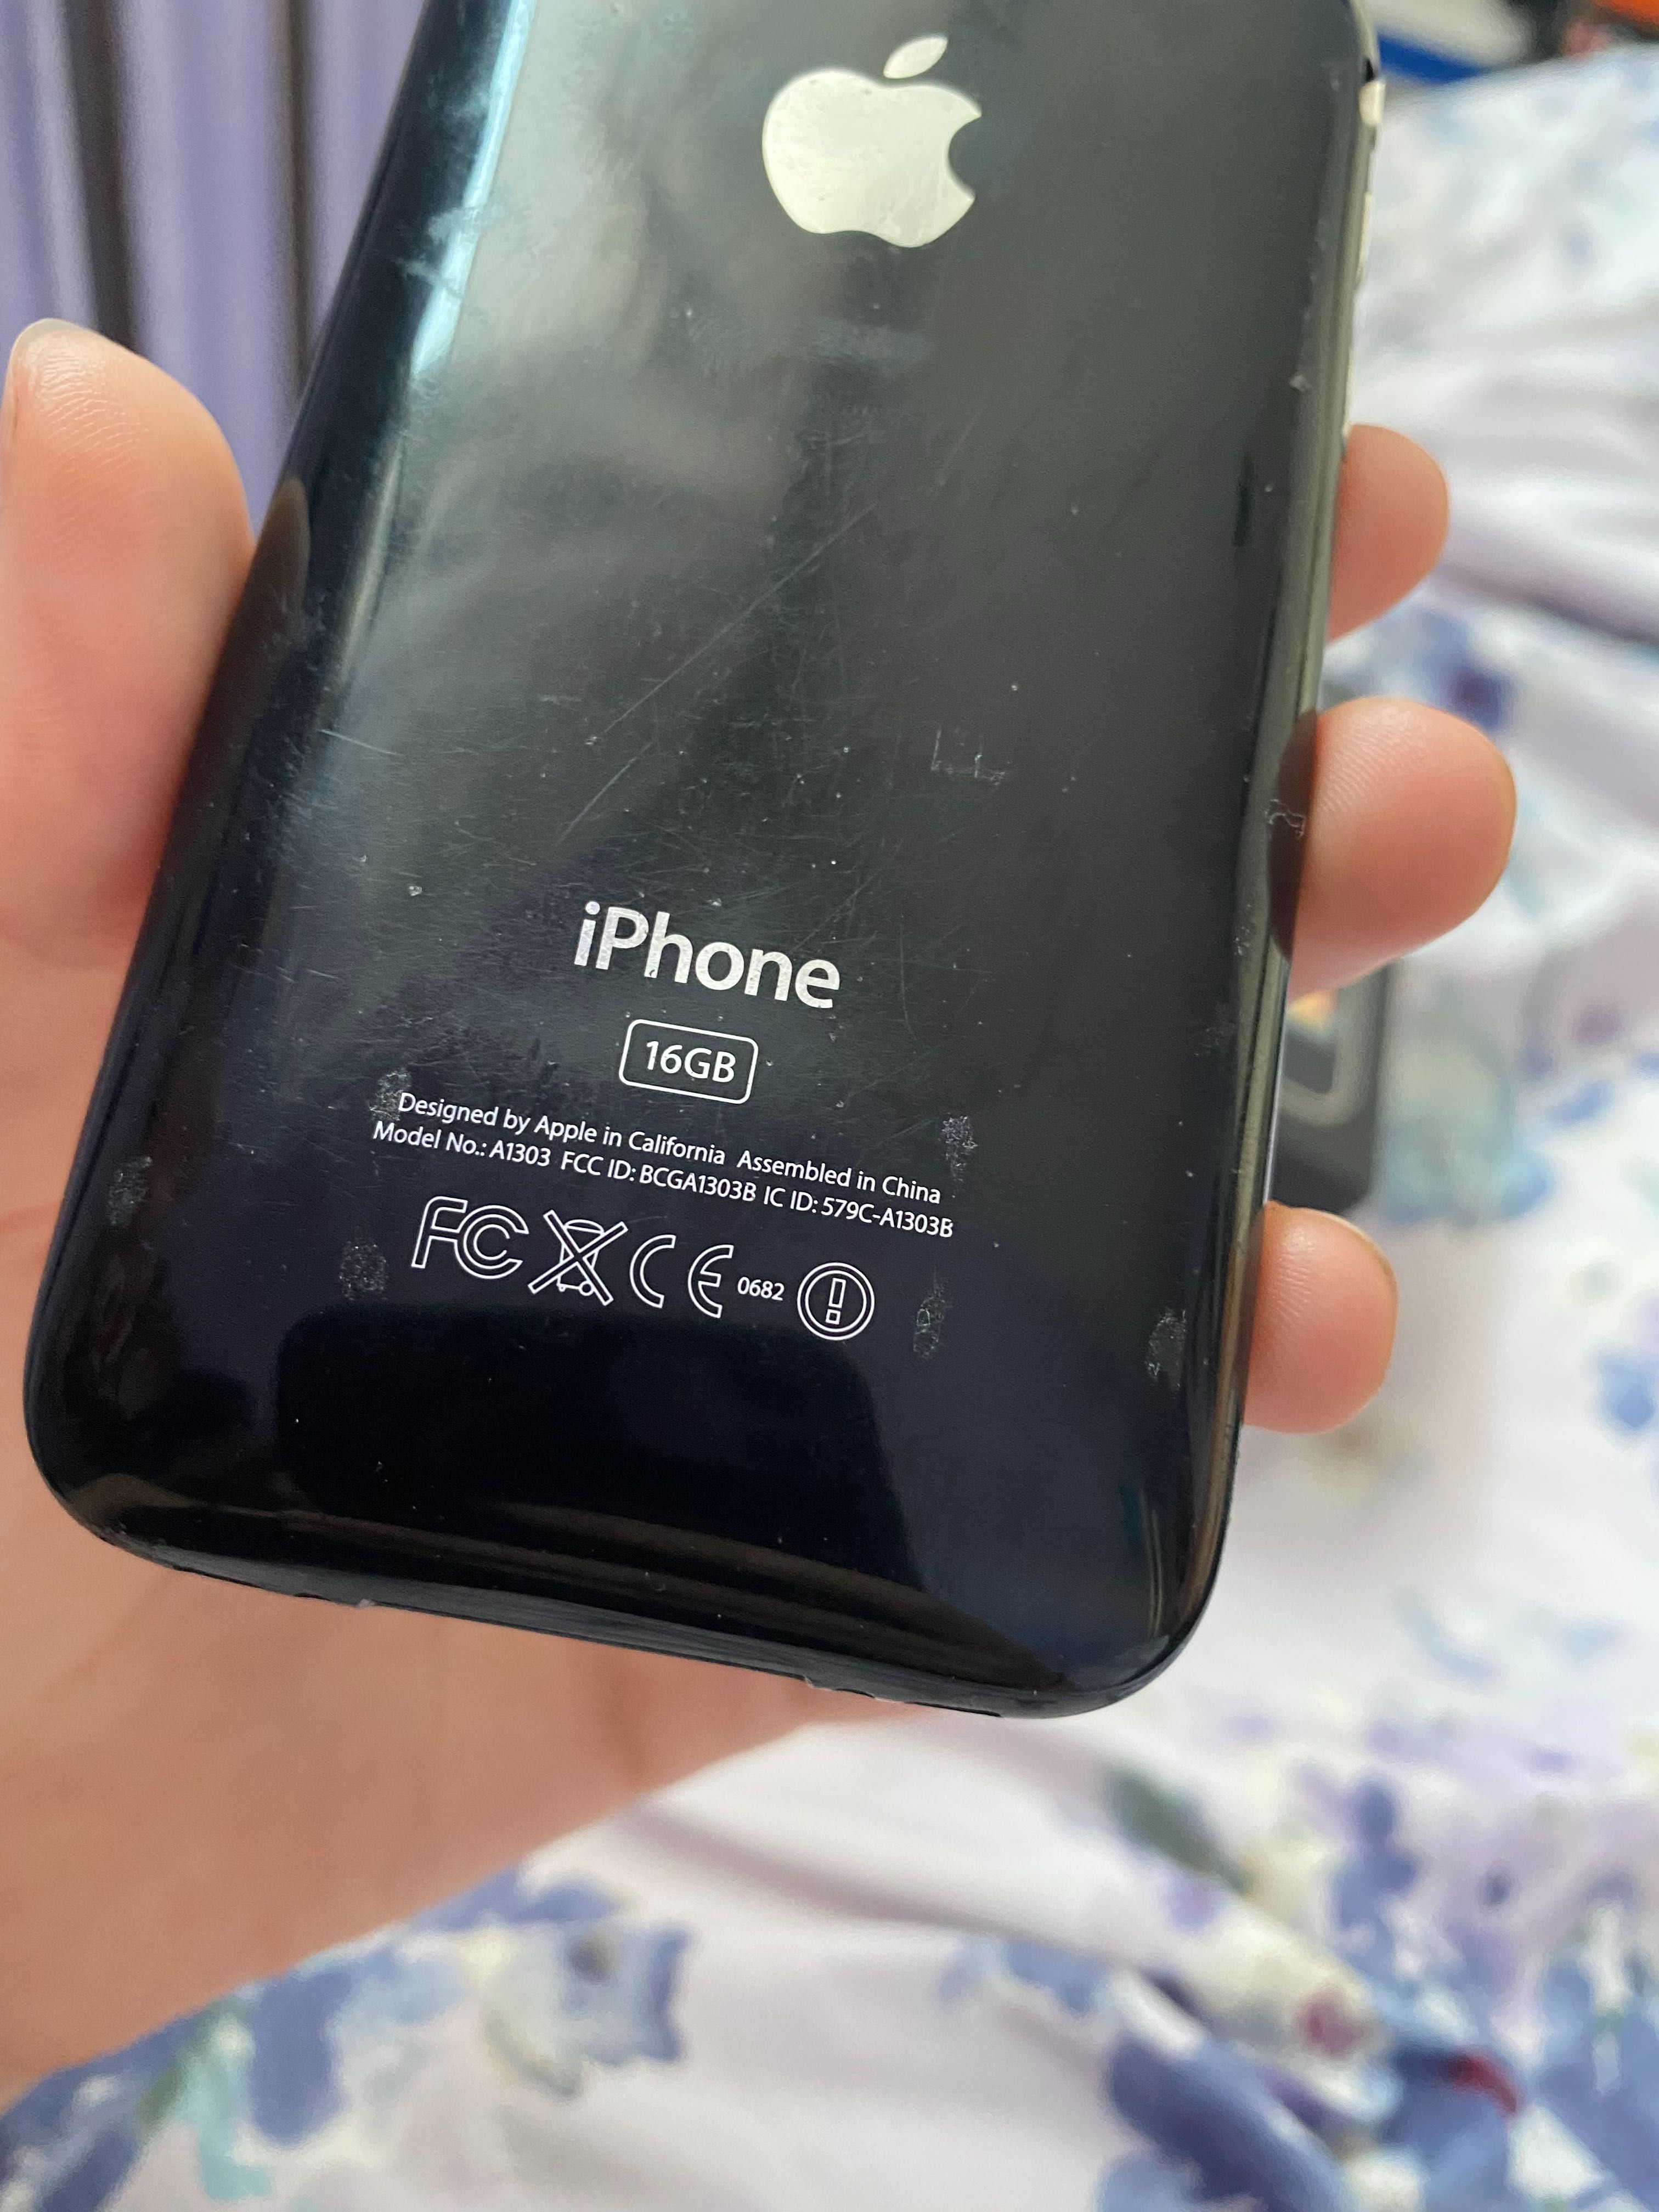 Telefon iPhone 3GS pudełko sprawny czarny vintage lata y2k